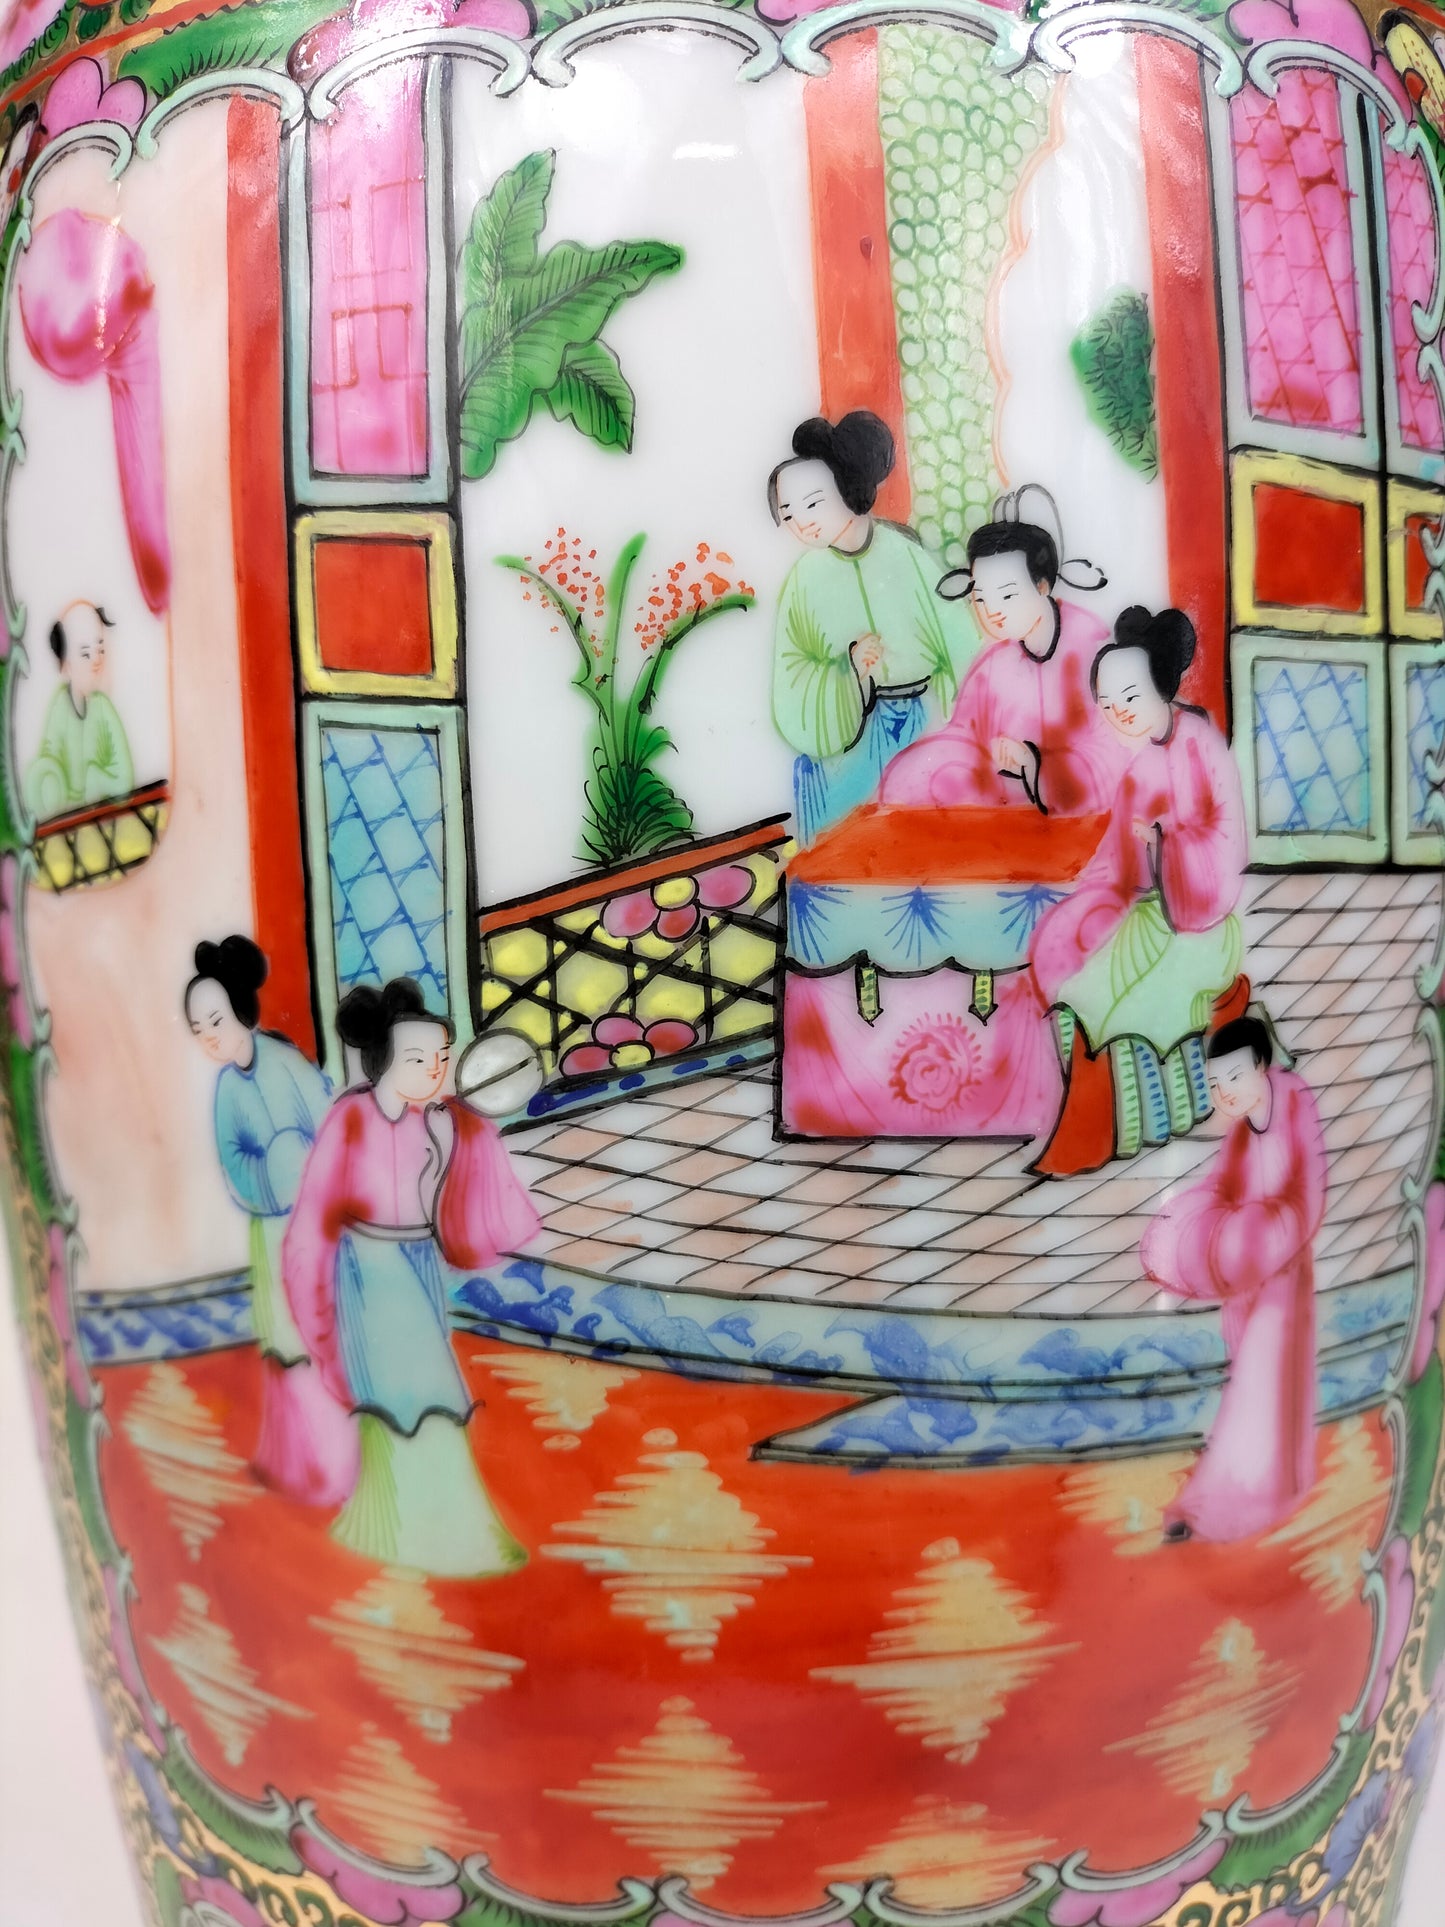 مزهرية ميدالية وردة كانتون صينية كبيرة مزينة بأشكال وزهور // القرن العشرين